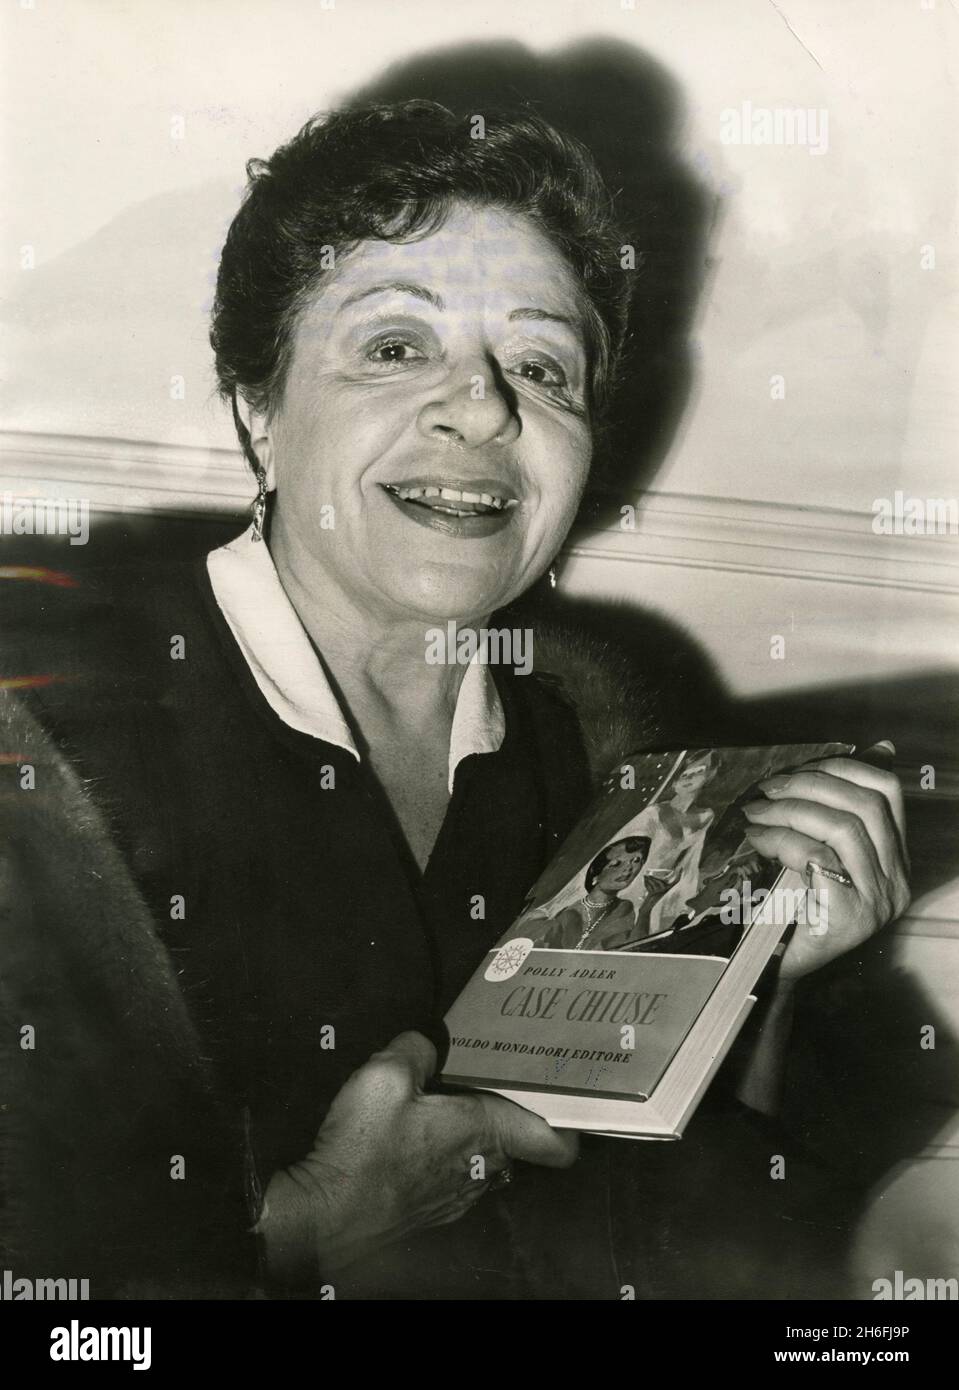 American madame et l'auteur Polly Adler présentant son nouveau livre case Chiuse, Italie 1953 Banque D'Images